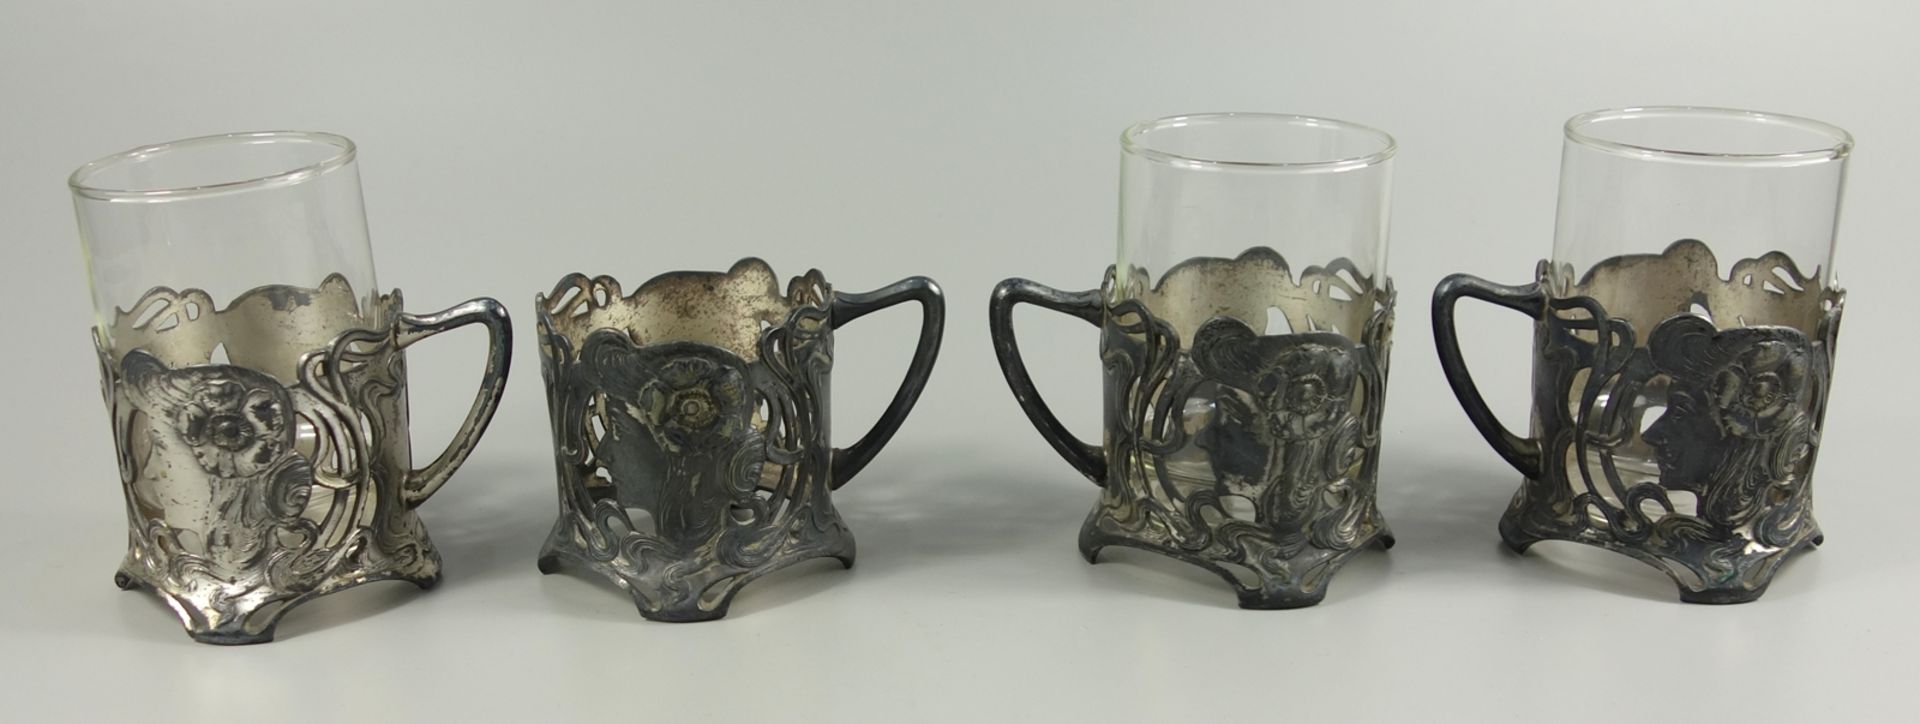 4 Teeglashalter, Jugendstil, um 1900, WMF / Württembergische Metallwarenfabrik Geislingen, - Bild 2 aus 2